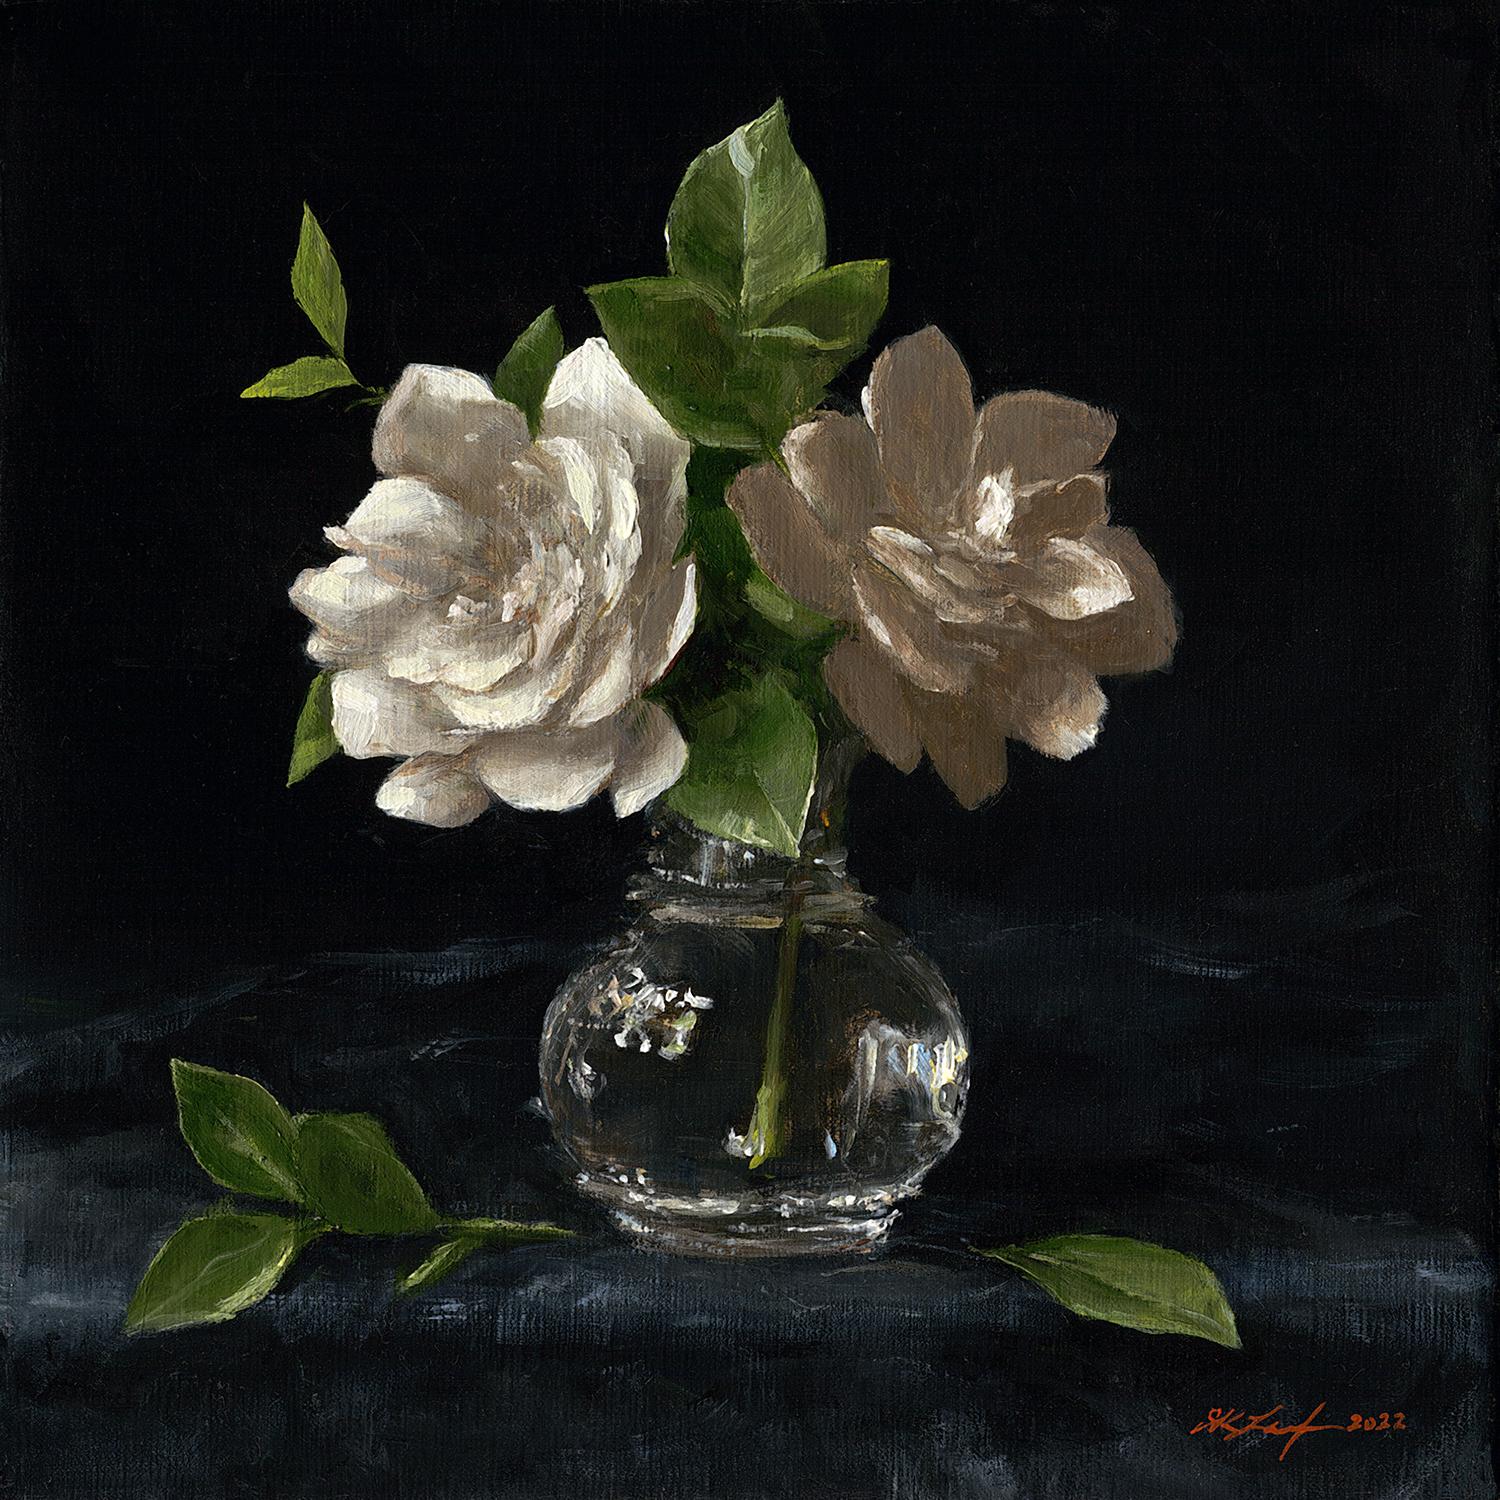 Sarah Lamb Still-Life Painting - "Gardenias in Juliska Vase" - Still Life - American Realist Painting - botanical